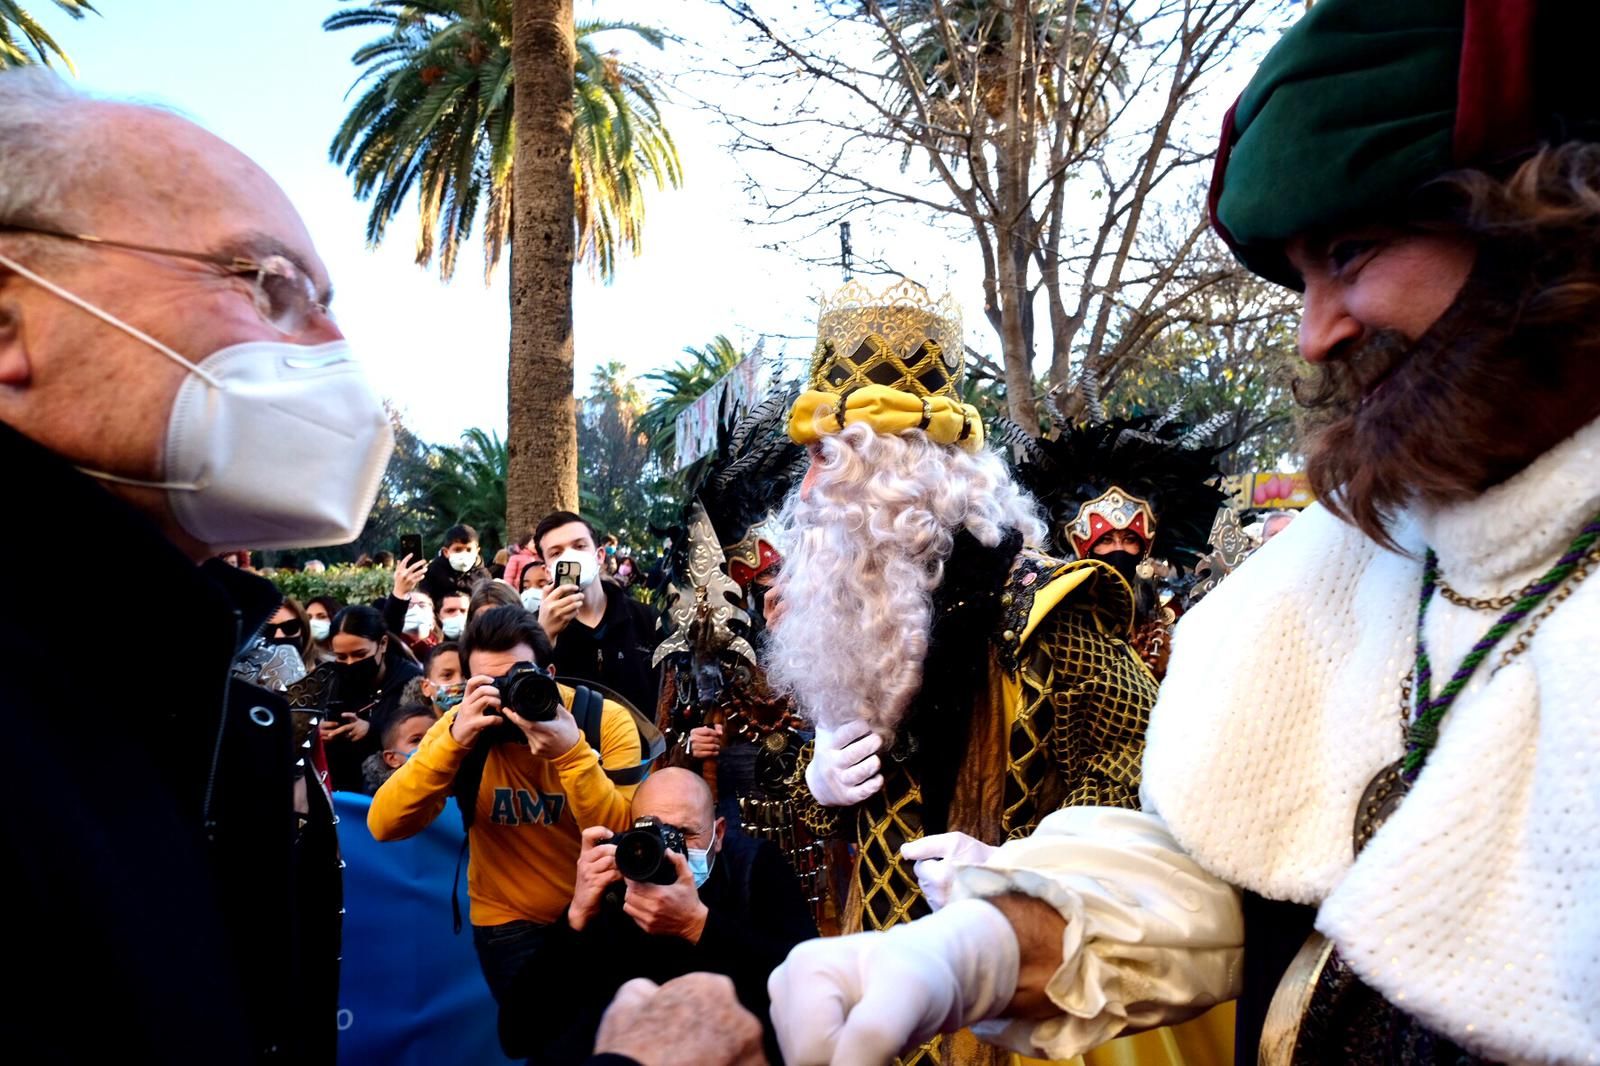 La Cabalgata de los Reyes Magos de Málaga de 2021